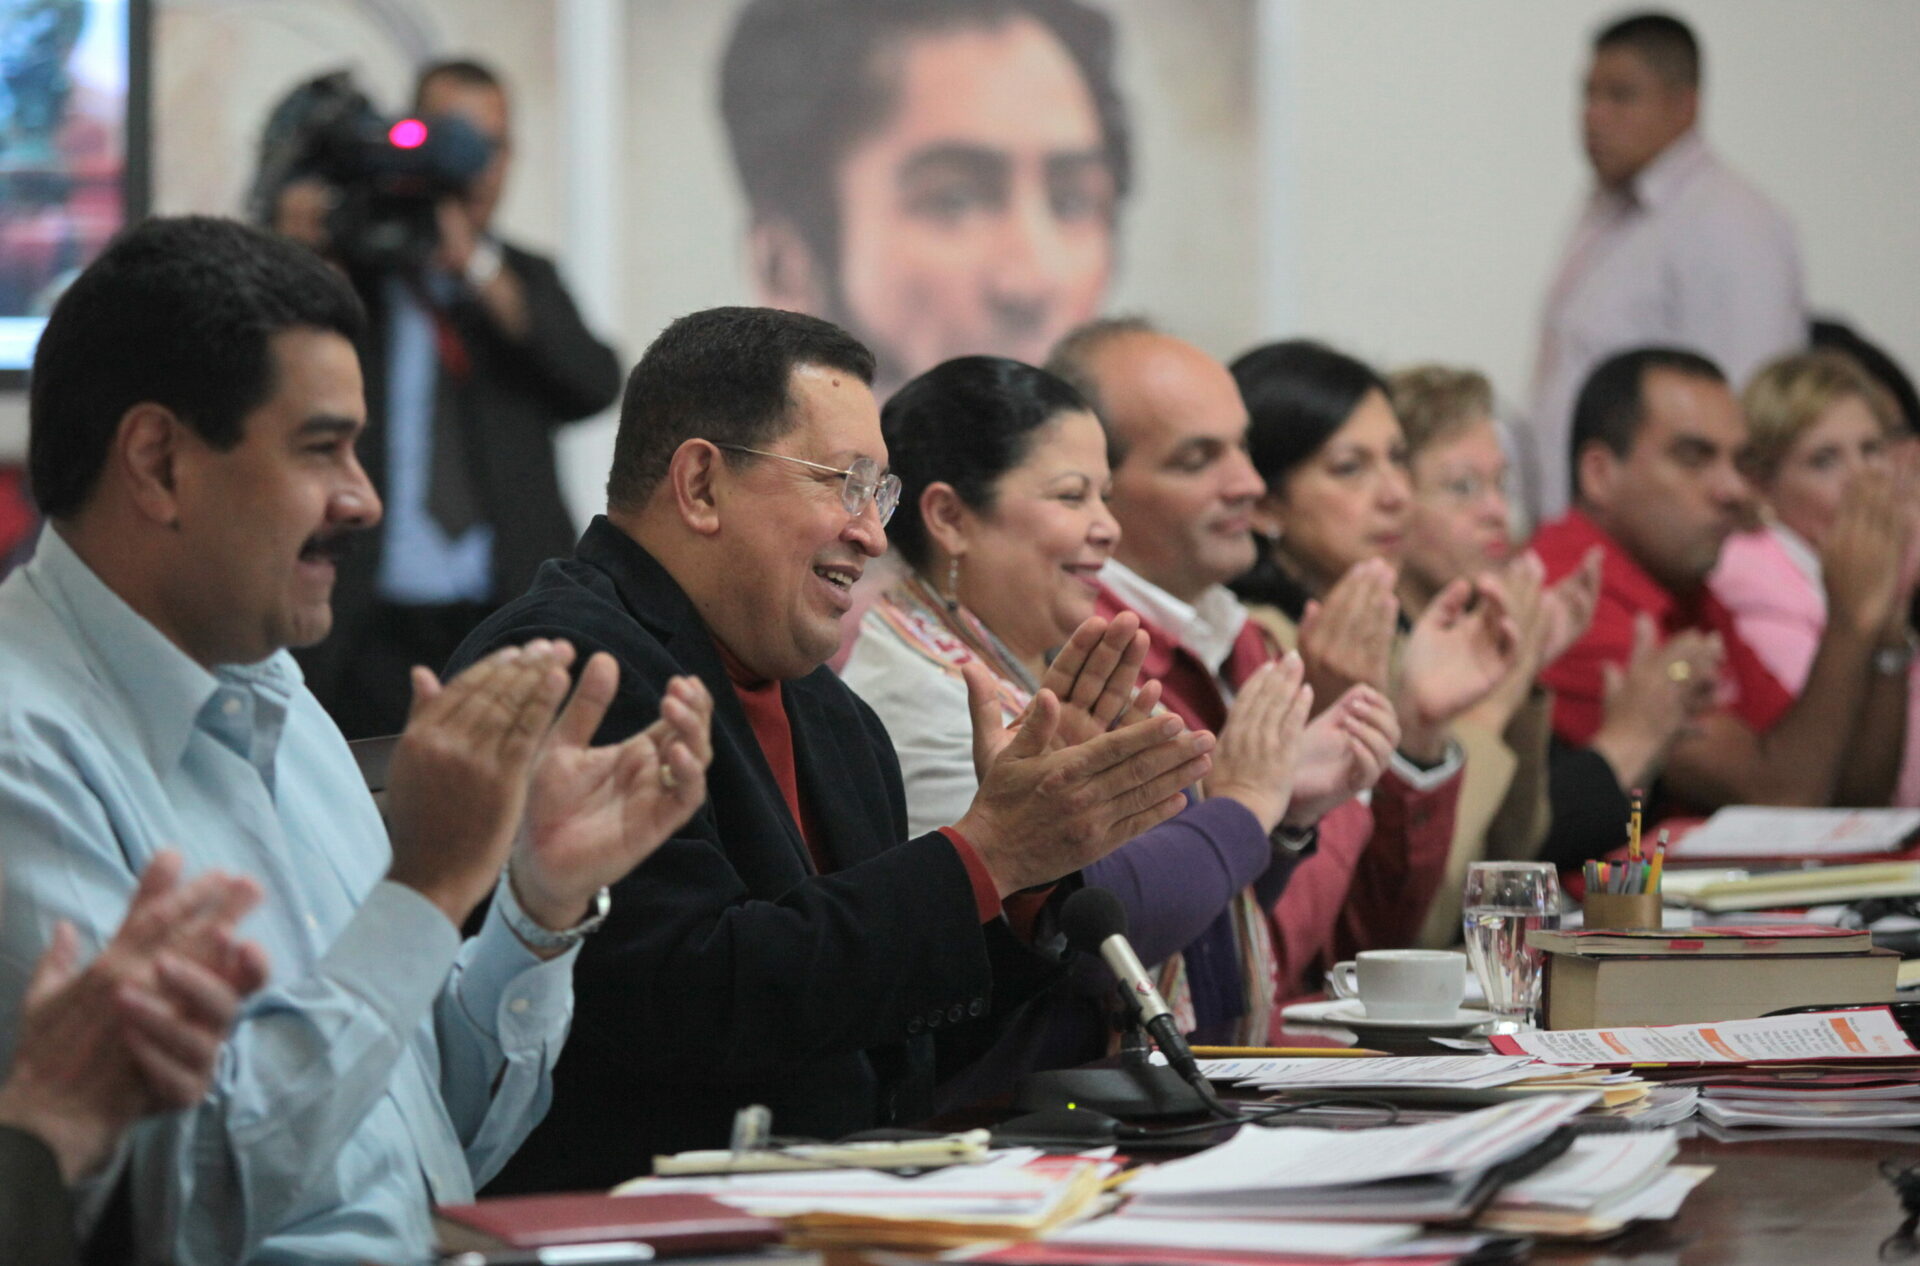 Chávez instruyó a su gabinete ministerial “a dar celeridad y garantía de desarrollo social integral” a los proyectos del Gobierno